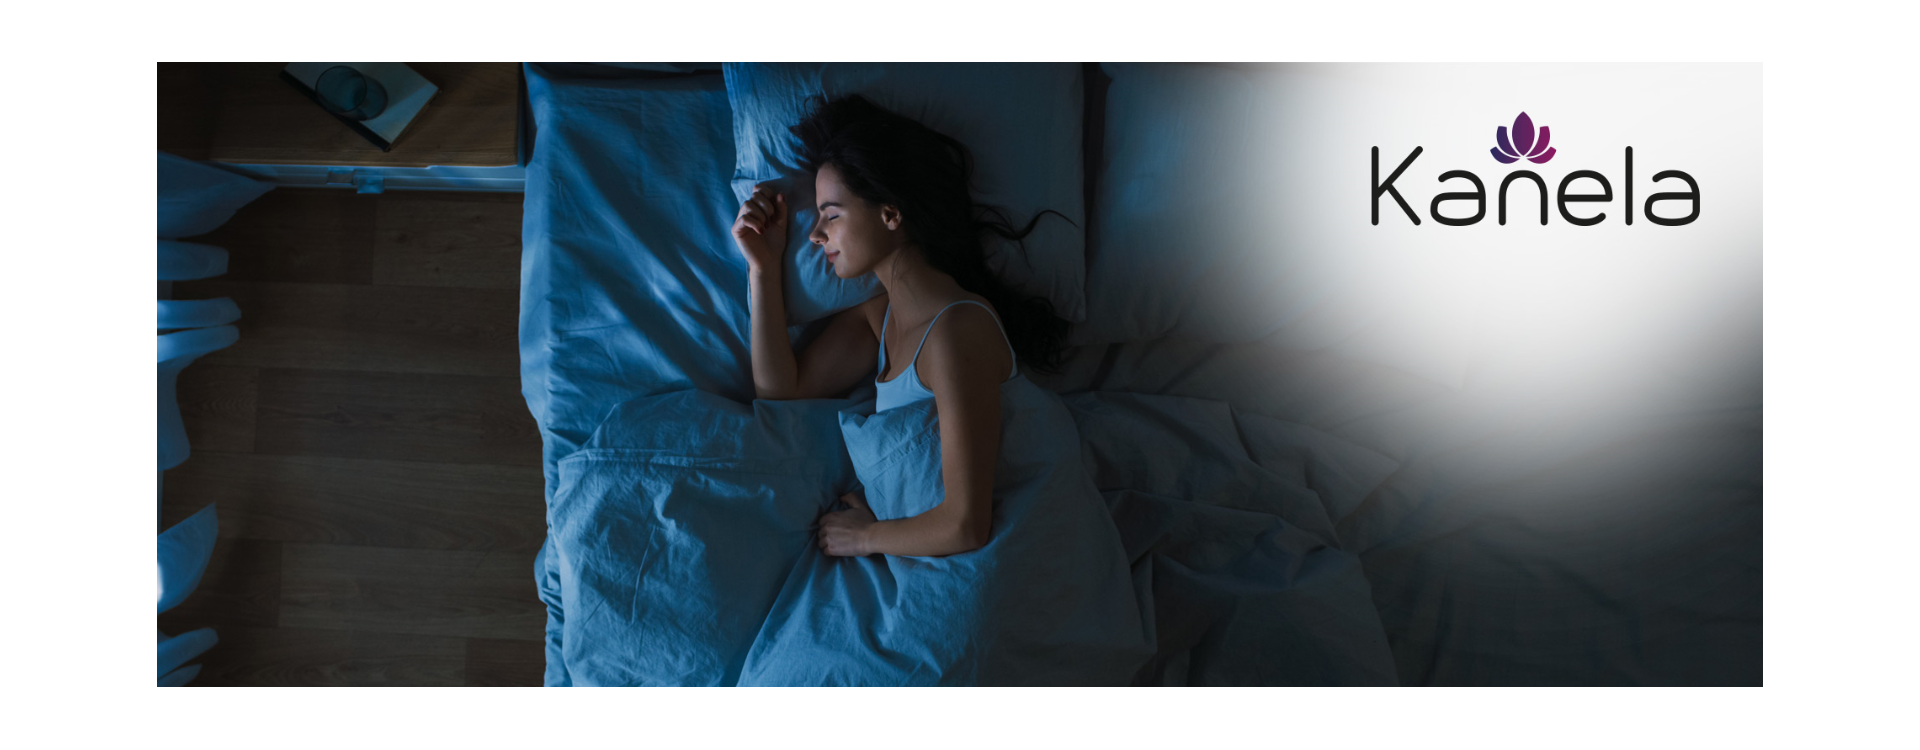 How to get enough sleep despite a cold